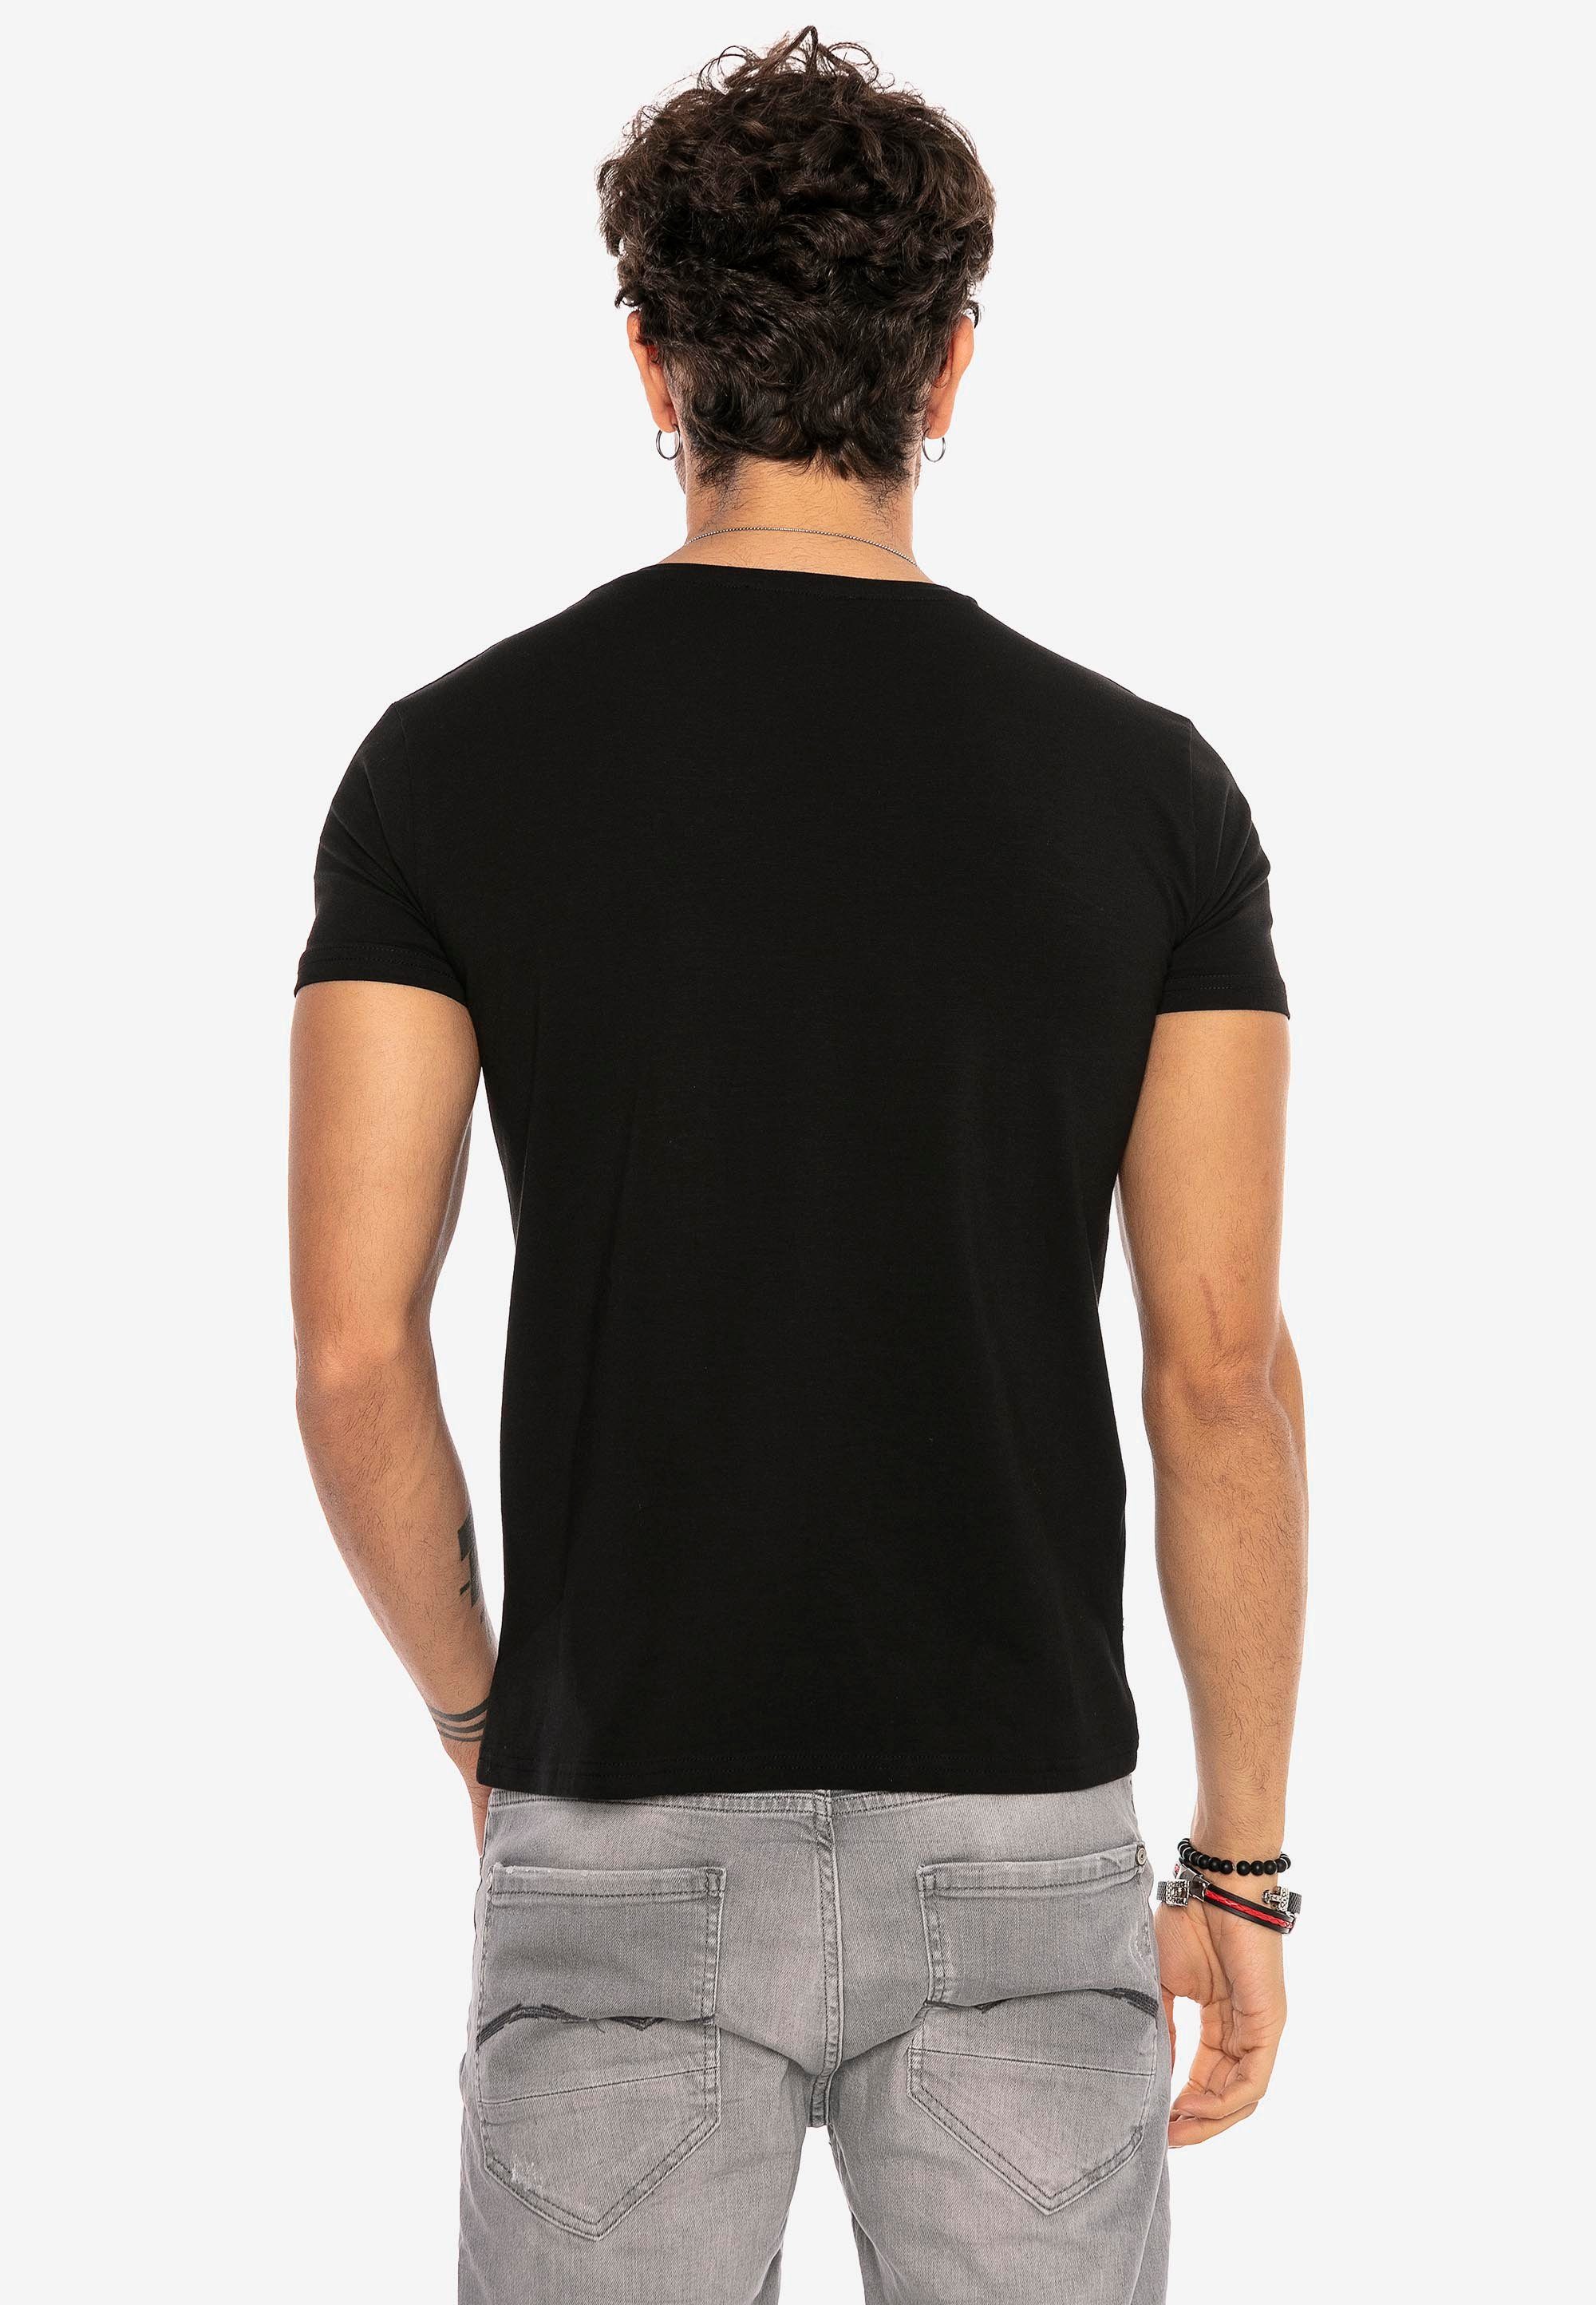 RedBridge T-Shirt Dayton in schwarz klassischem Design